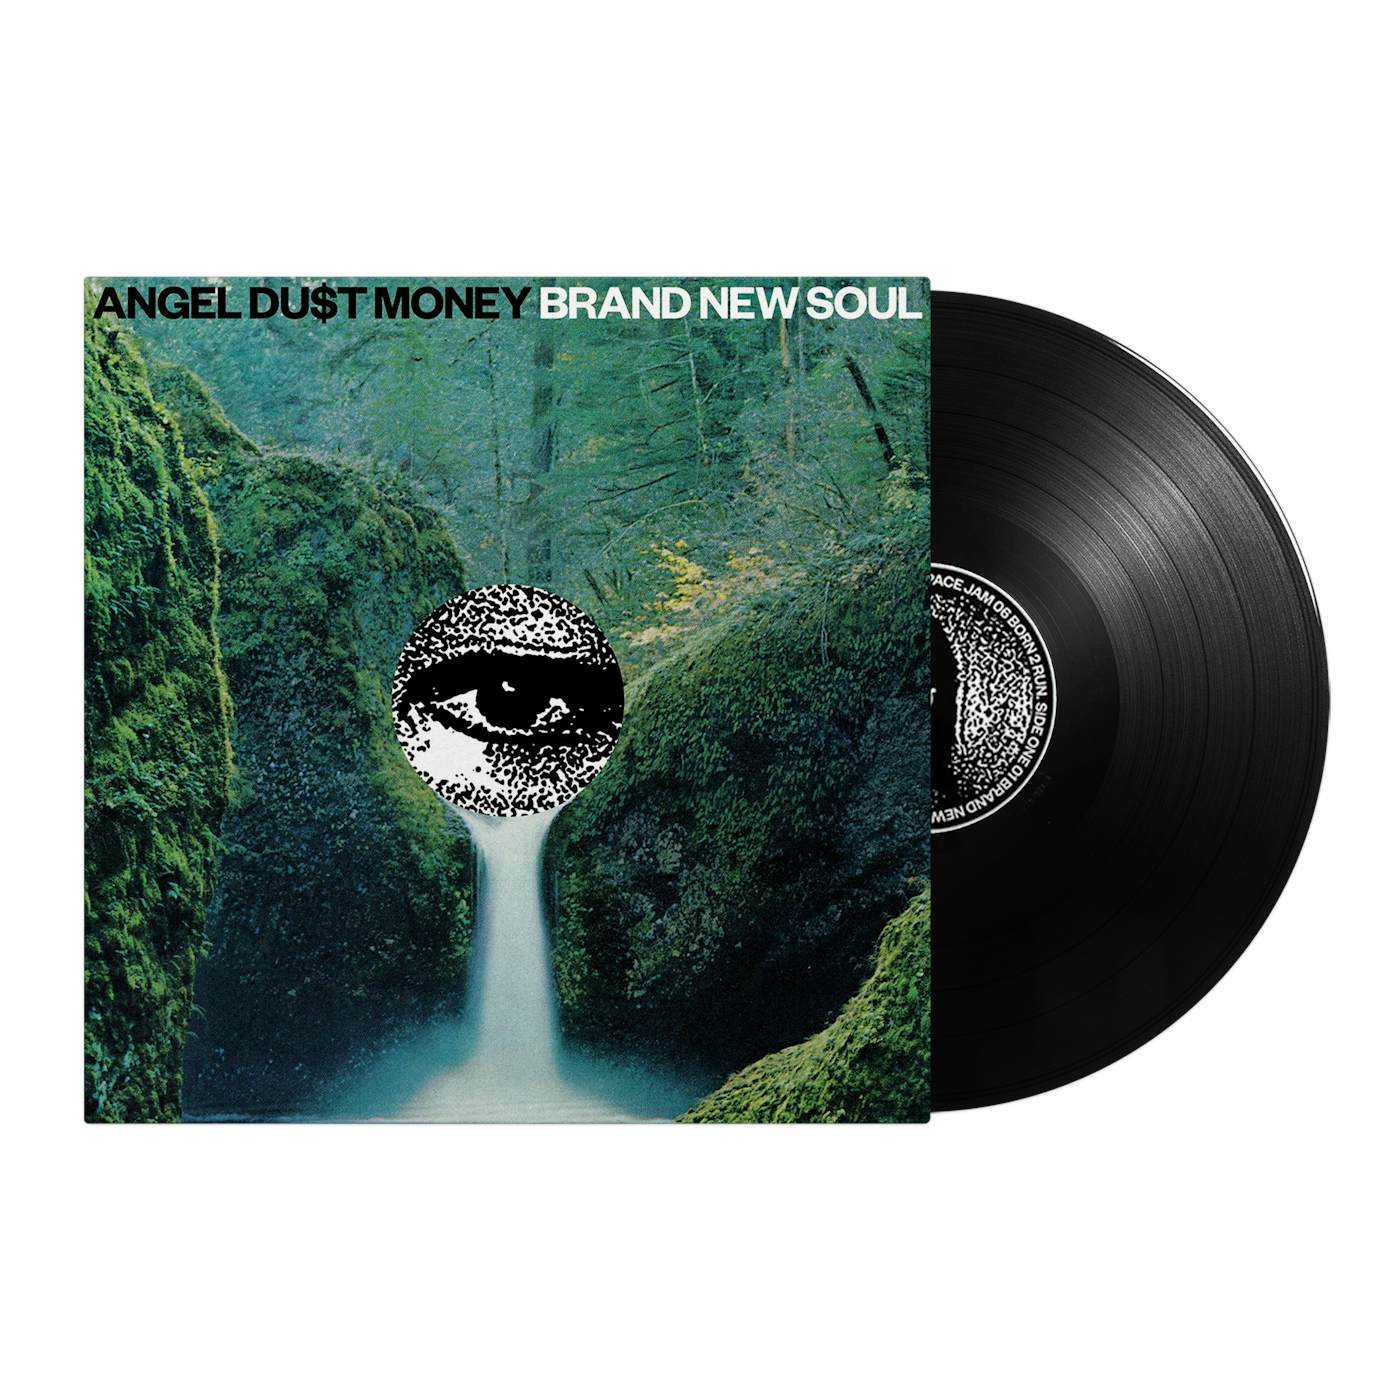  Angel Du$t - "Brand New Soul" LP (Vinyl)